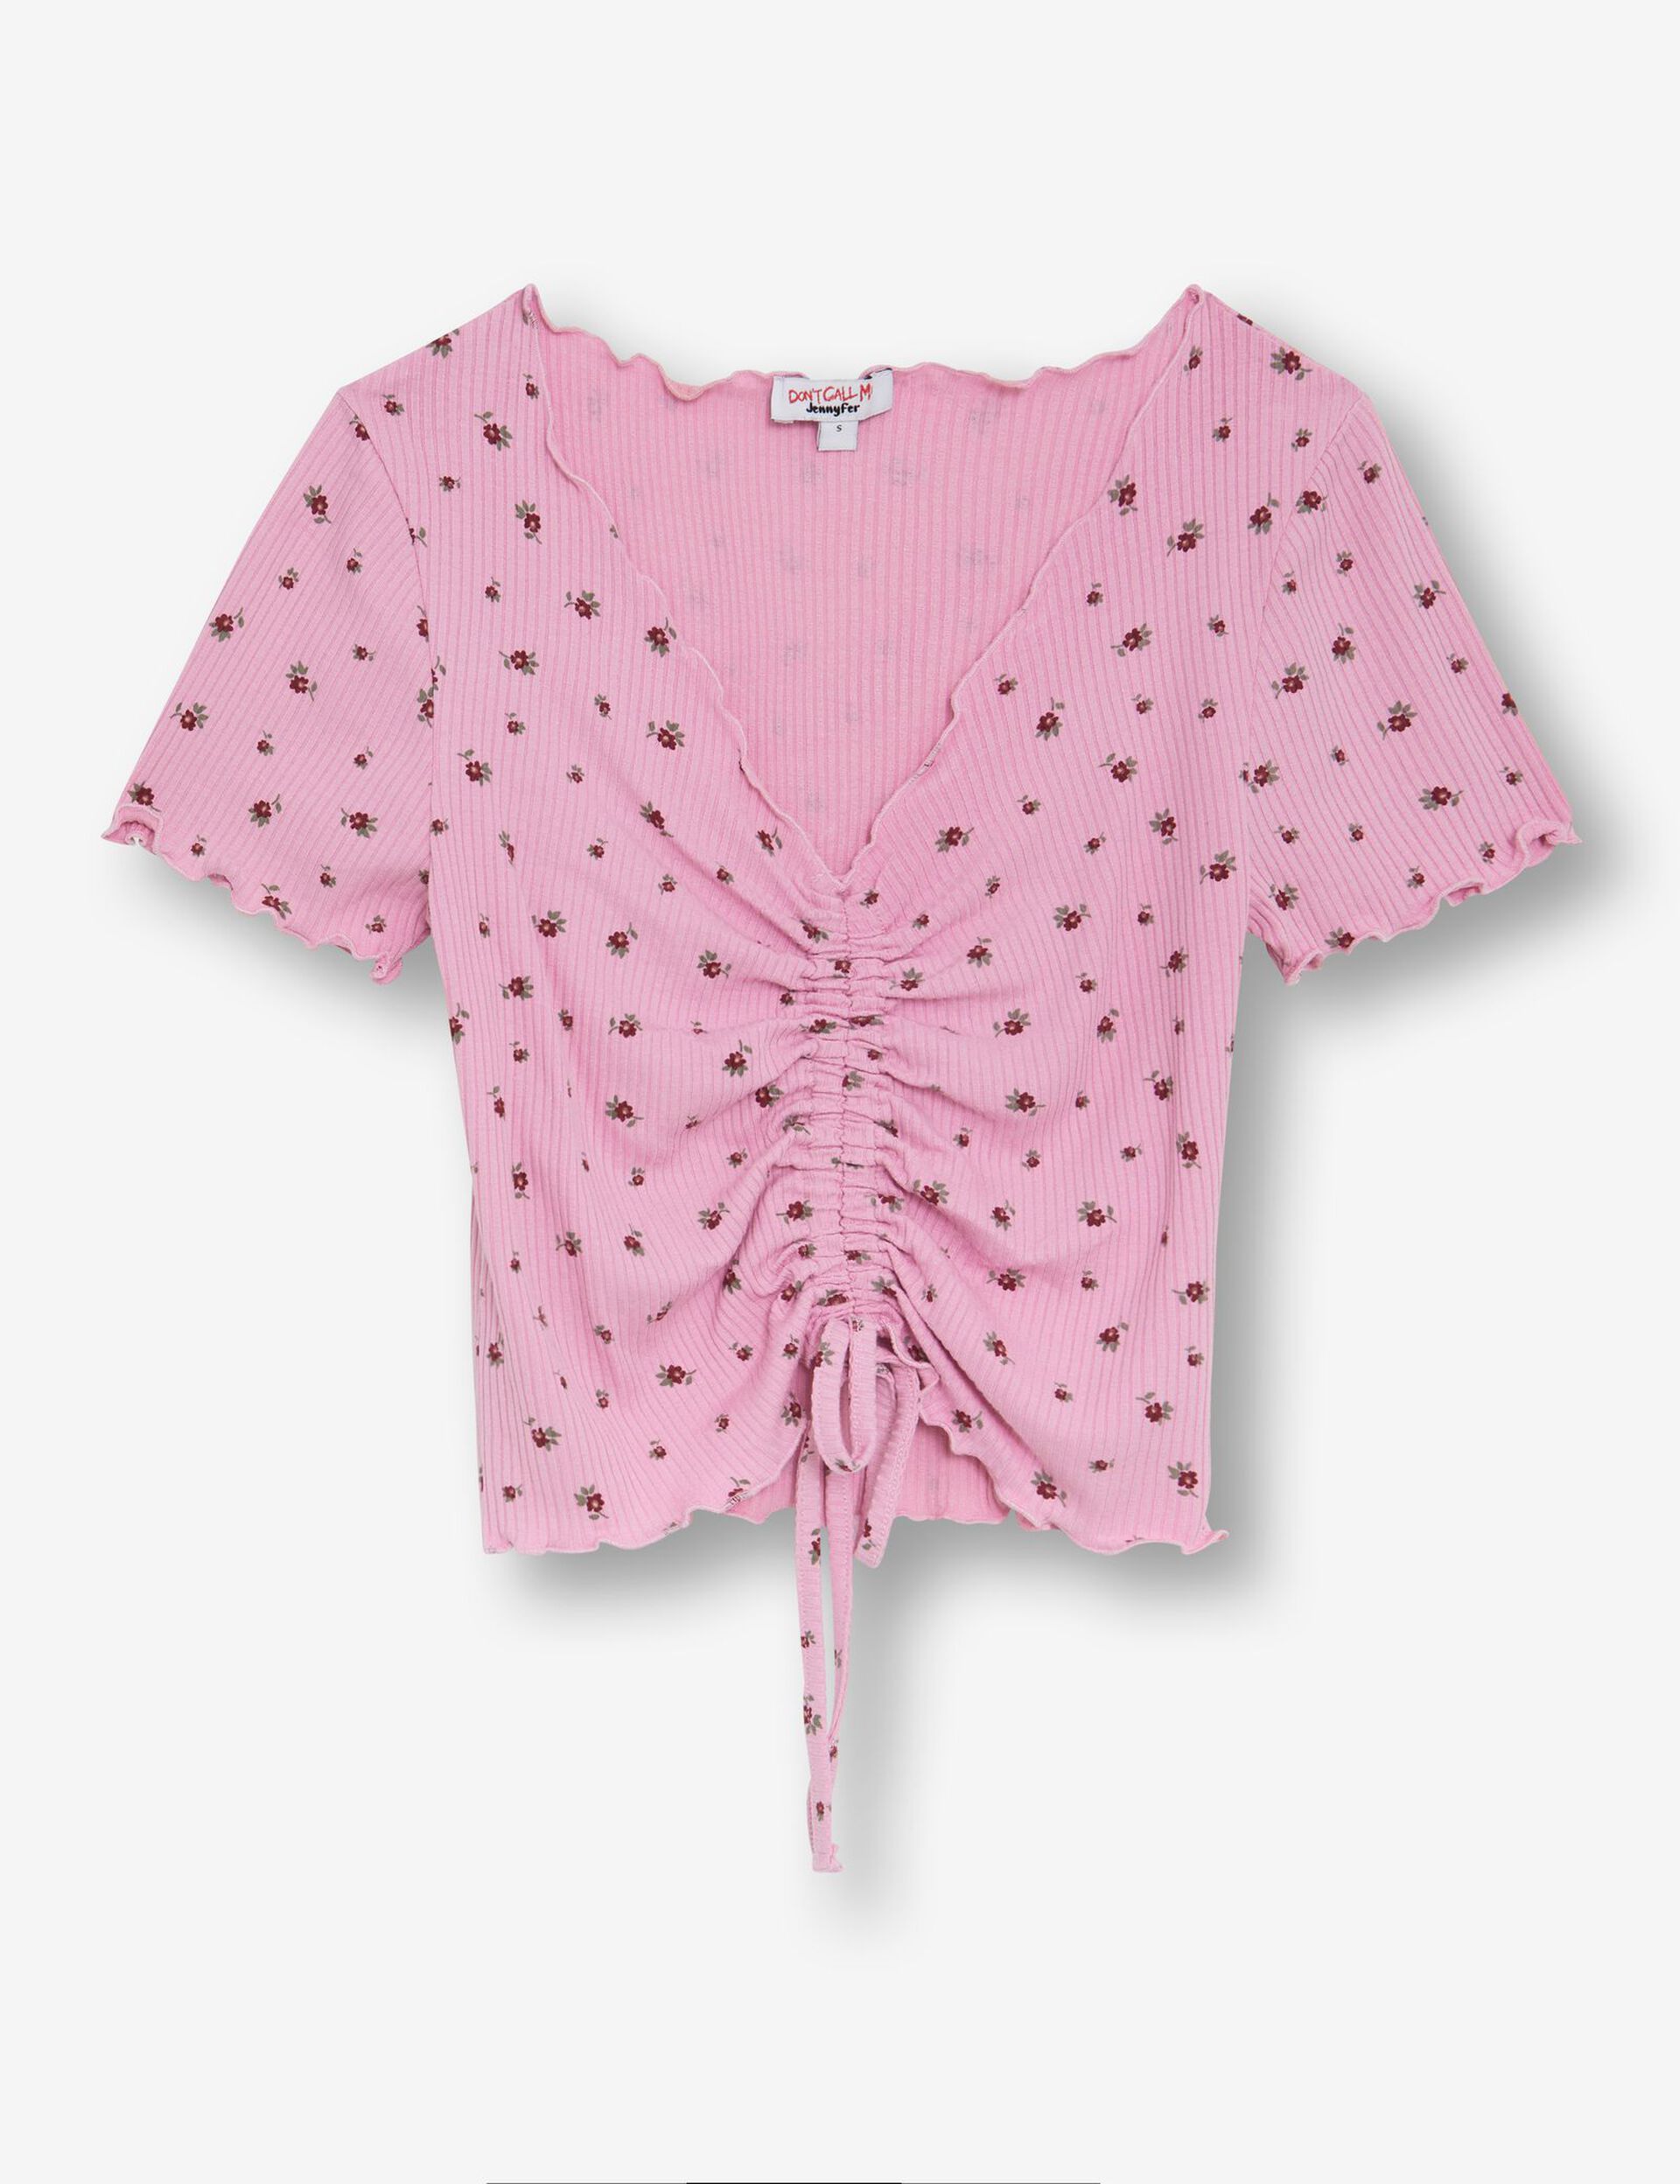 Tee-shirt fleuri rose avec fronces